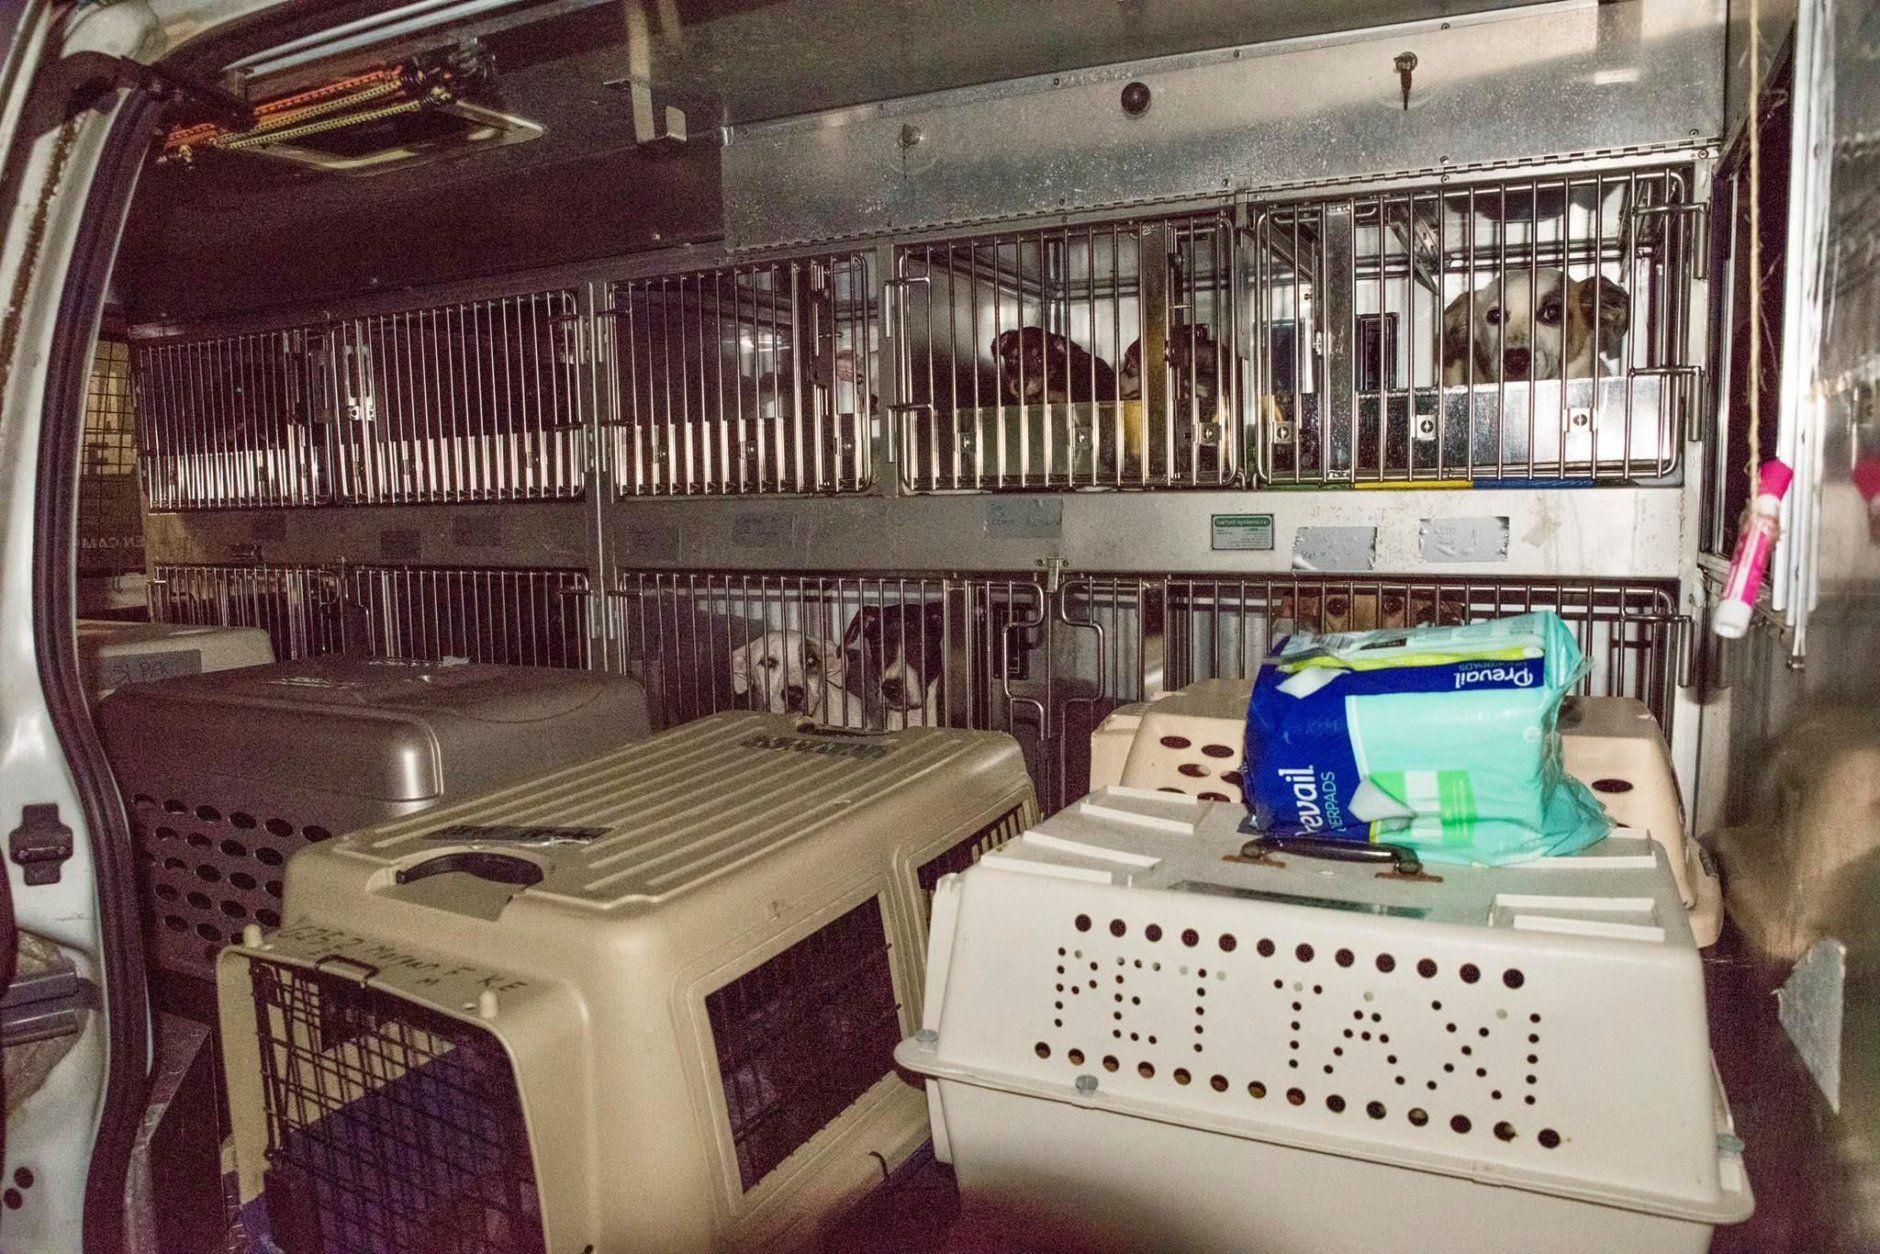 Dogs sit in kennels inside a Humane Rescue Alliance van.